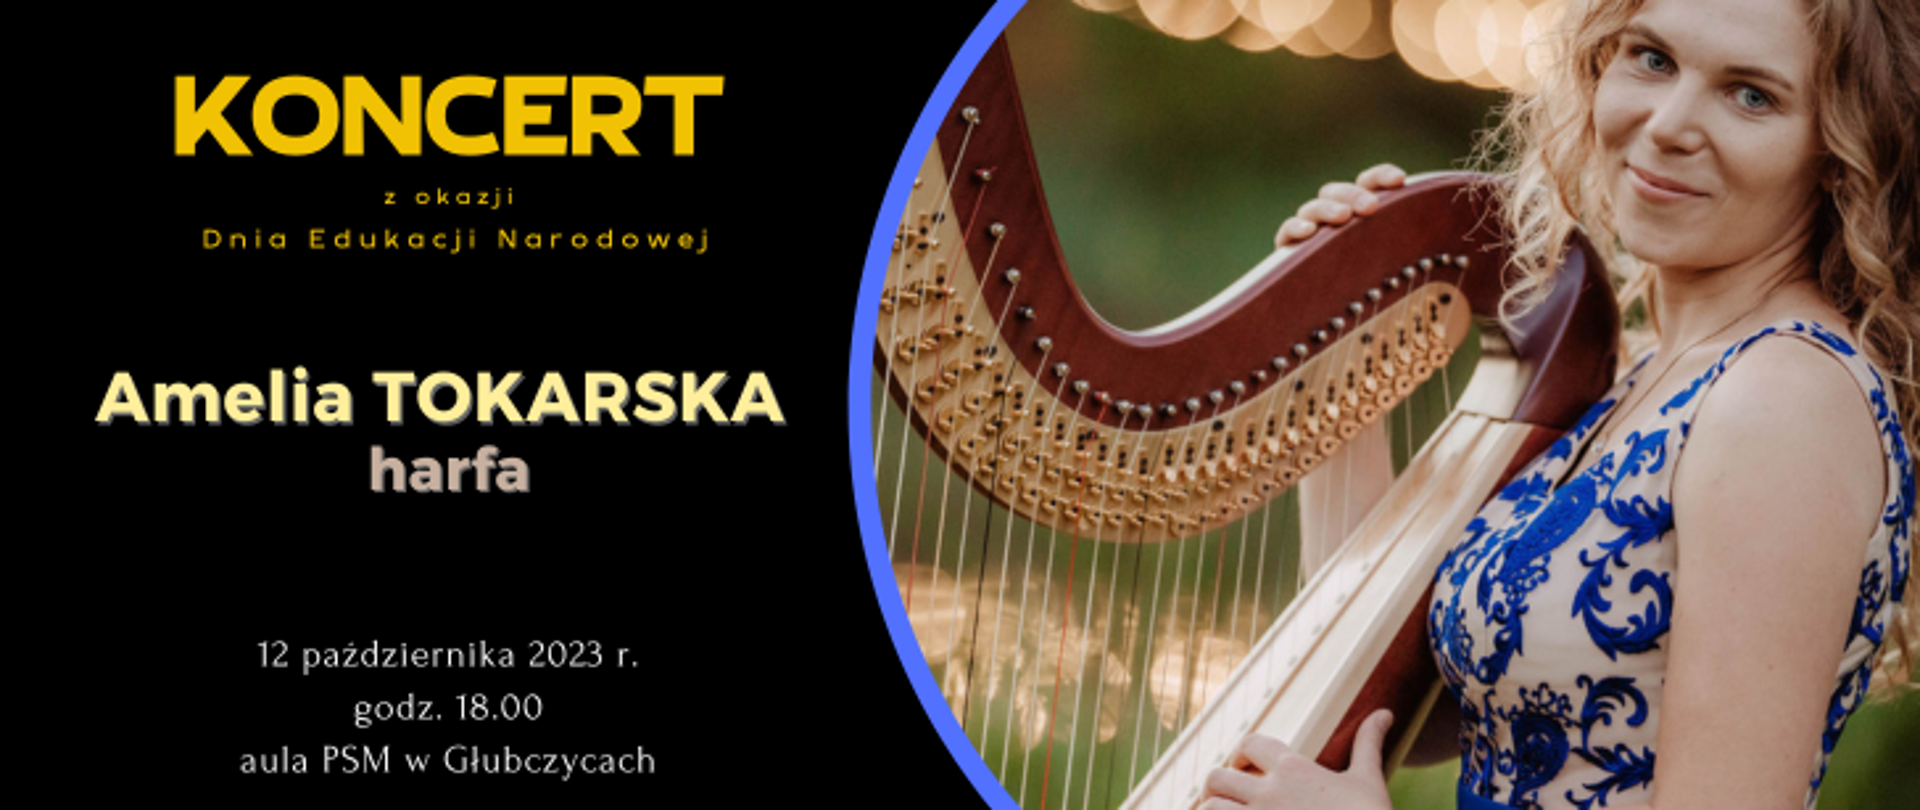 tekst na czarnym tle: Koncert z okazji Dnia Edukacji Narodowej Amelia Tokarska - harfa, 12 października 2023 r godz. 18:00 aula PSM w Głubczycach, po prawej fotografia wykonawczyni z harfą.